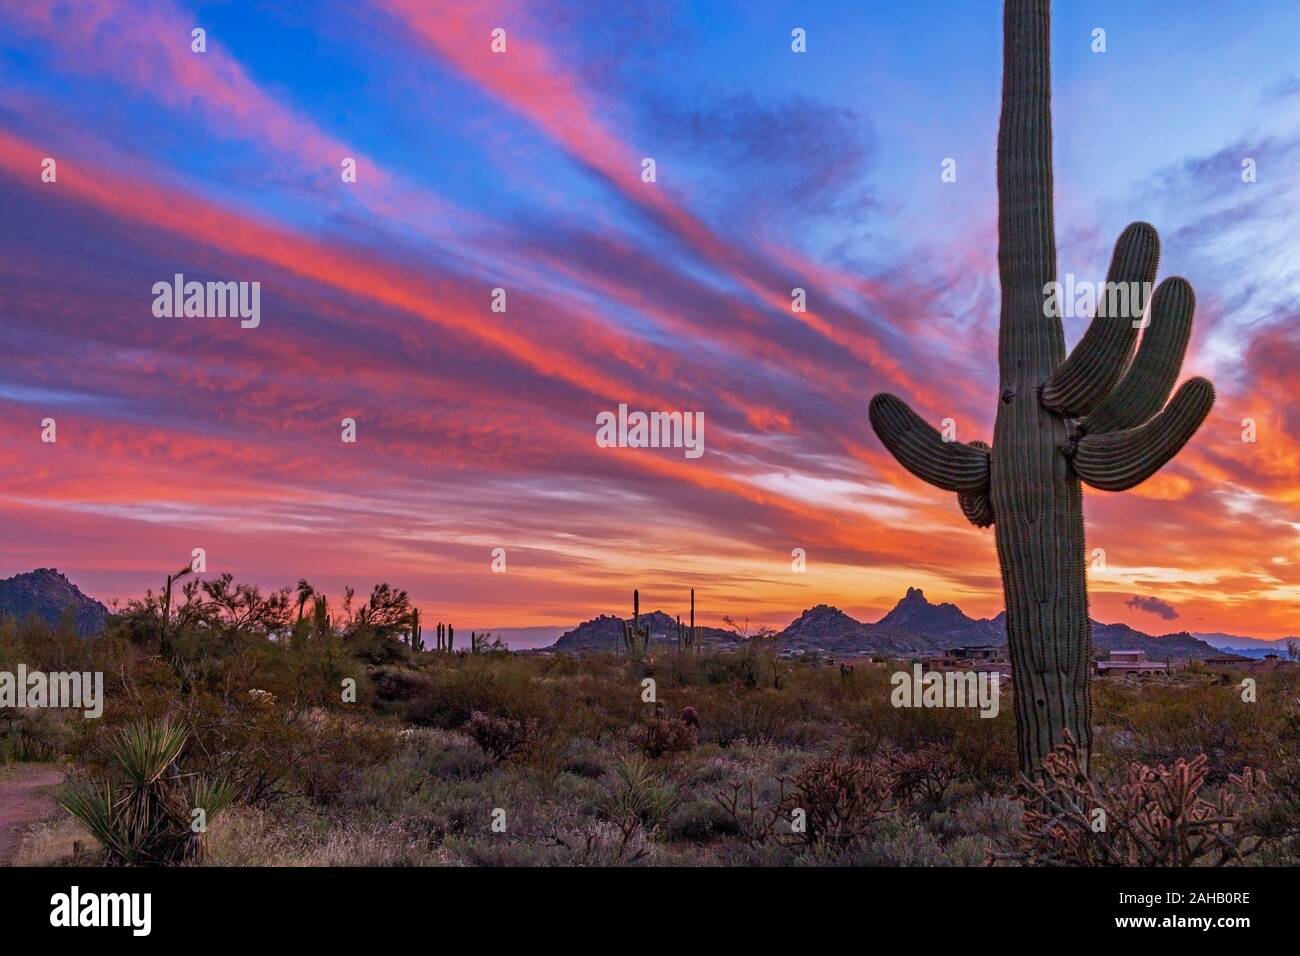 Farbenfroh und klassischen Wüste in Arizona Sunset Landschaft mit Saguaro Kaktus Stockfoto